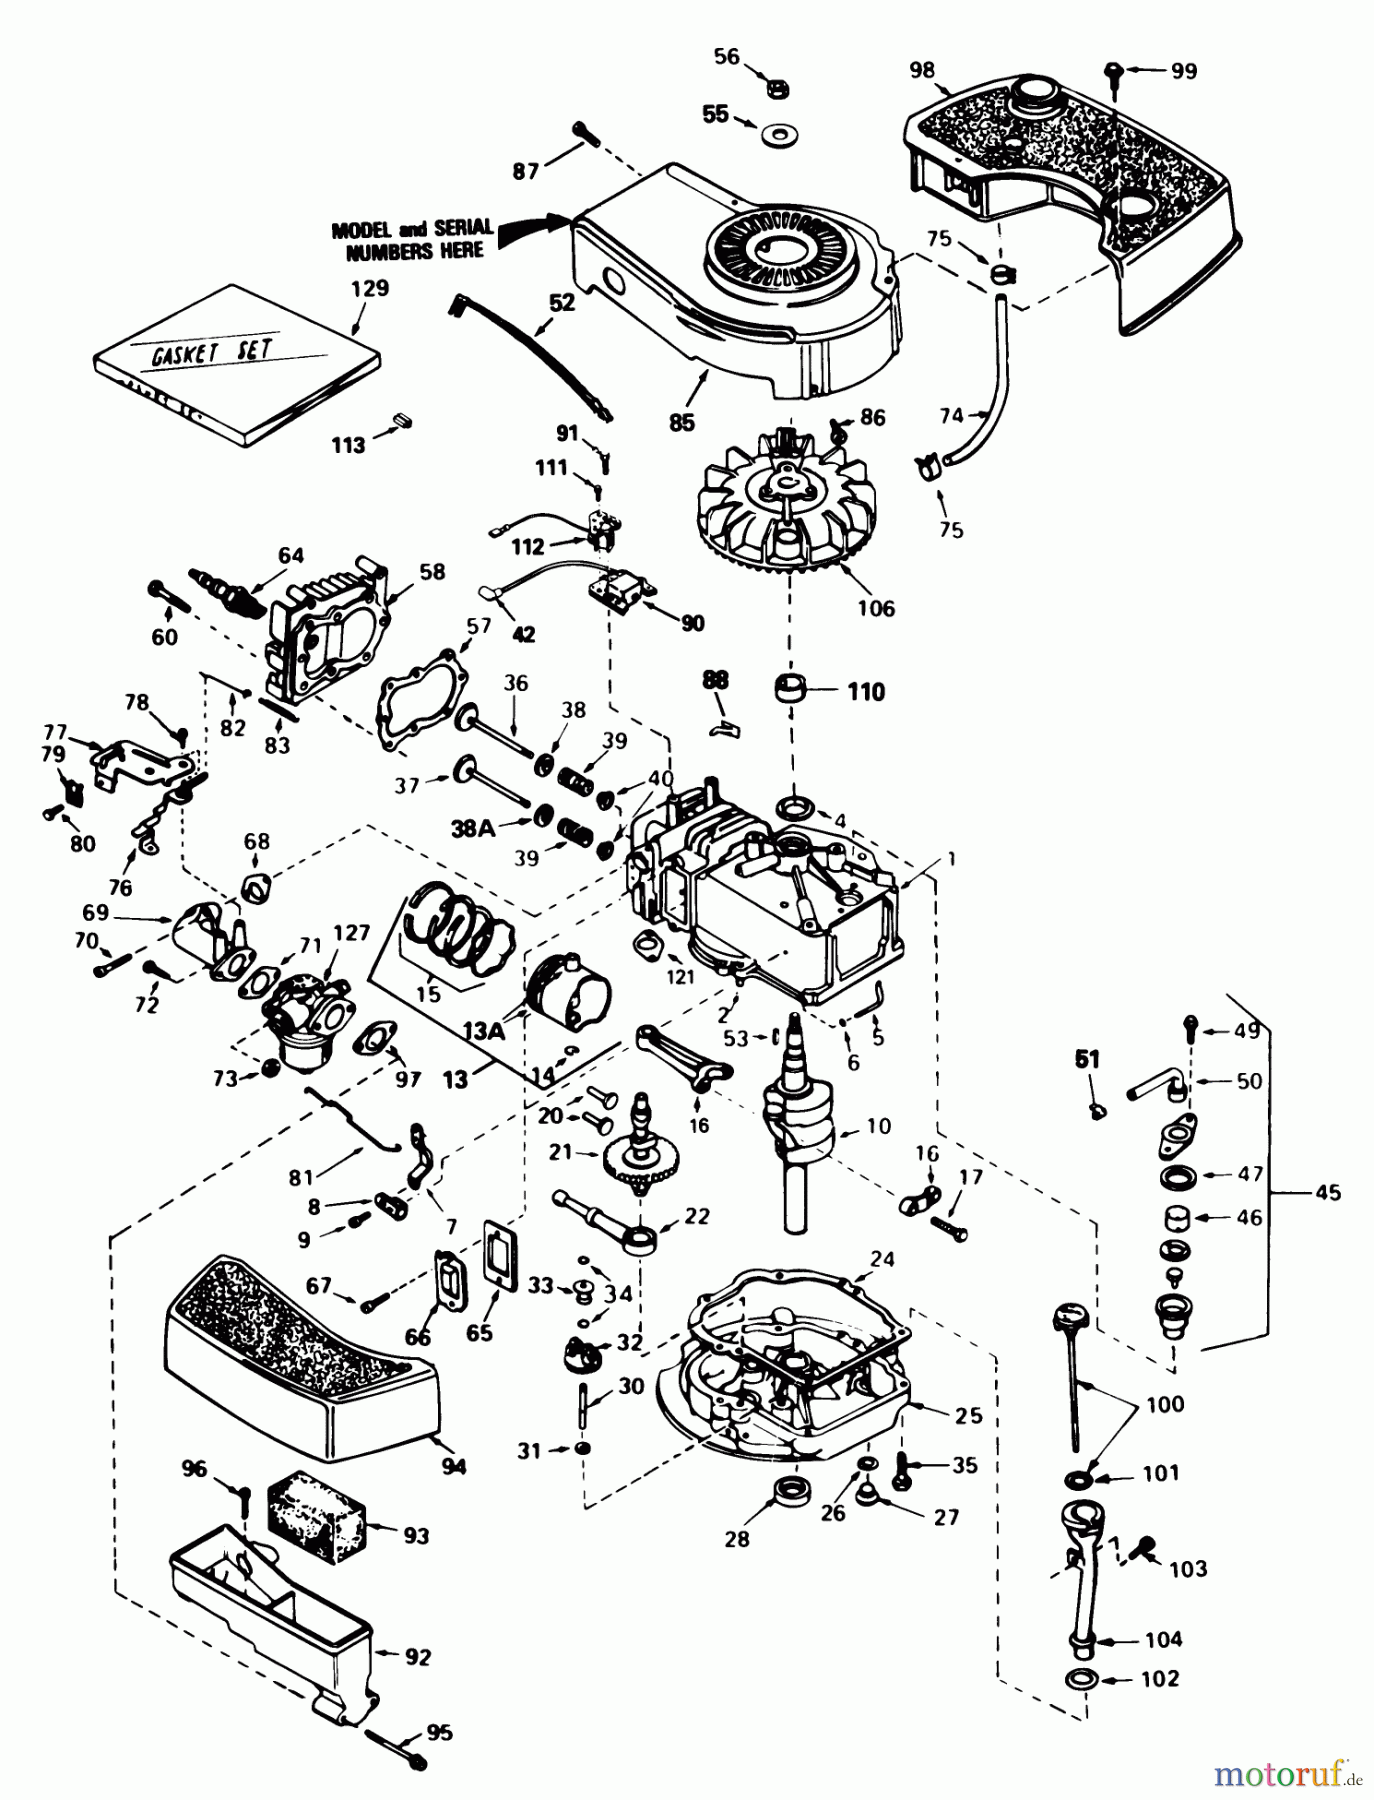  Toro Neu Mowers, Walk-Behind Seite 1 20574 - Toro Lawnmower, 1987 (7000001-7999999) ENGINE TECUMSEH MODEL NO. TNT 100 10097E